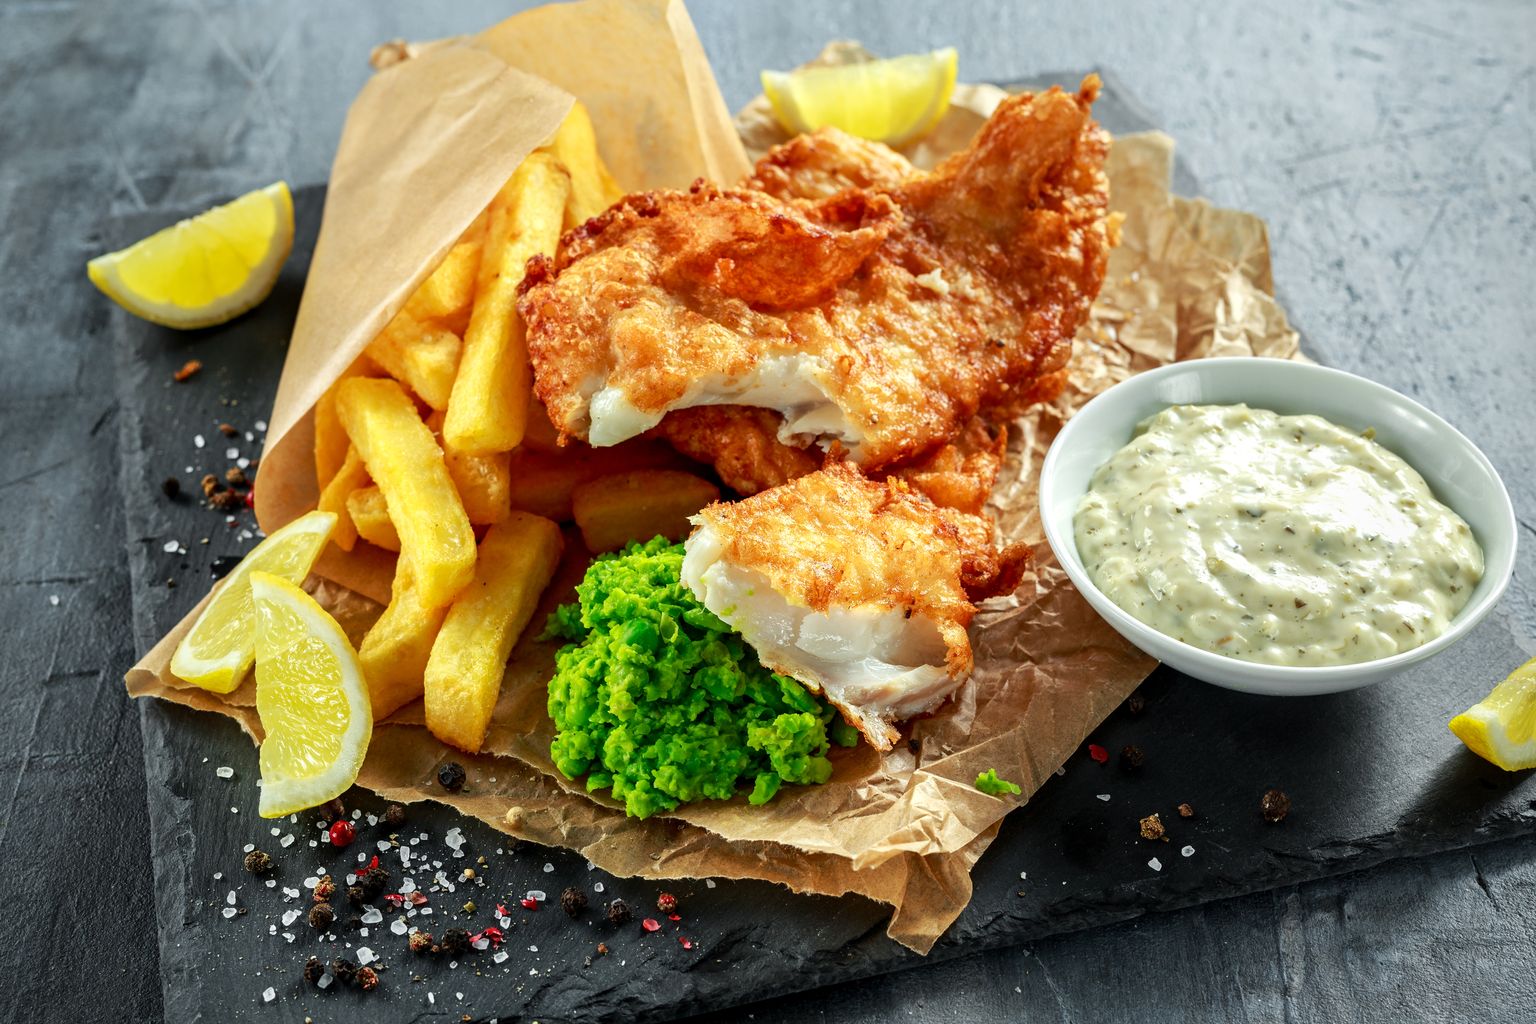 Традиционное британское блюдо "Fish and chips". Фото иллюстративное.